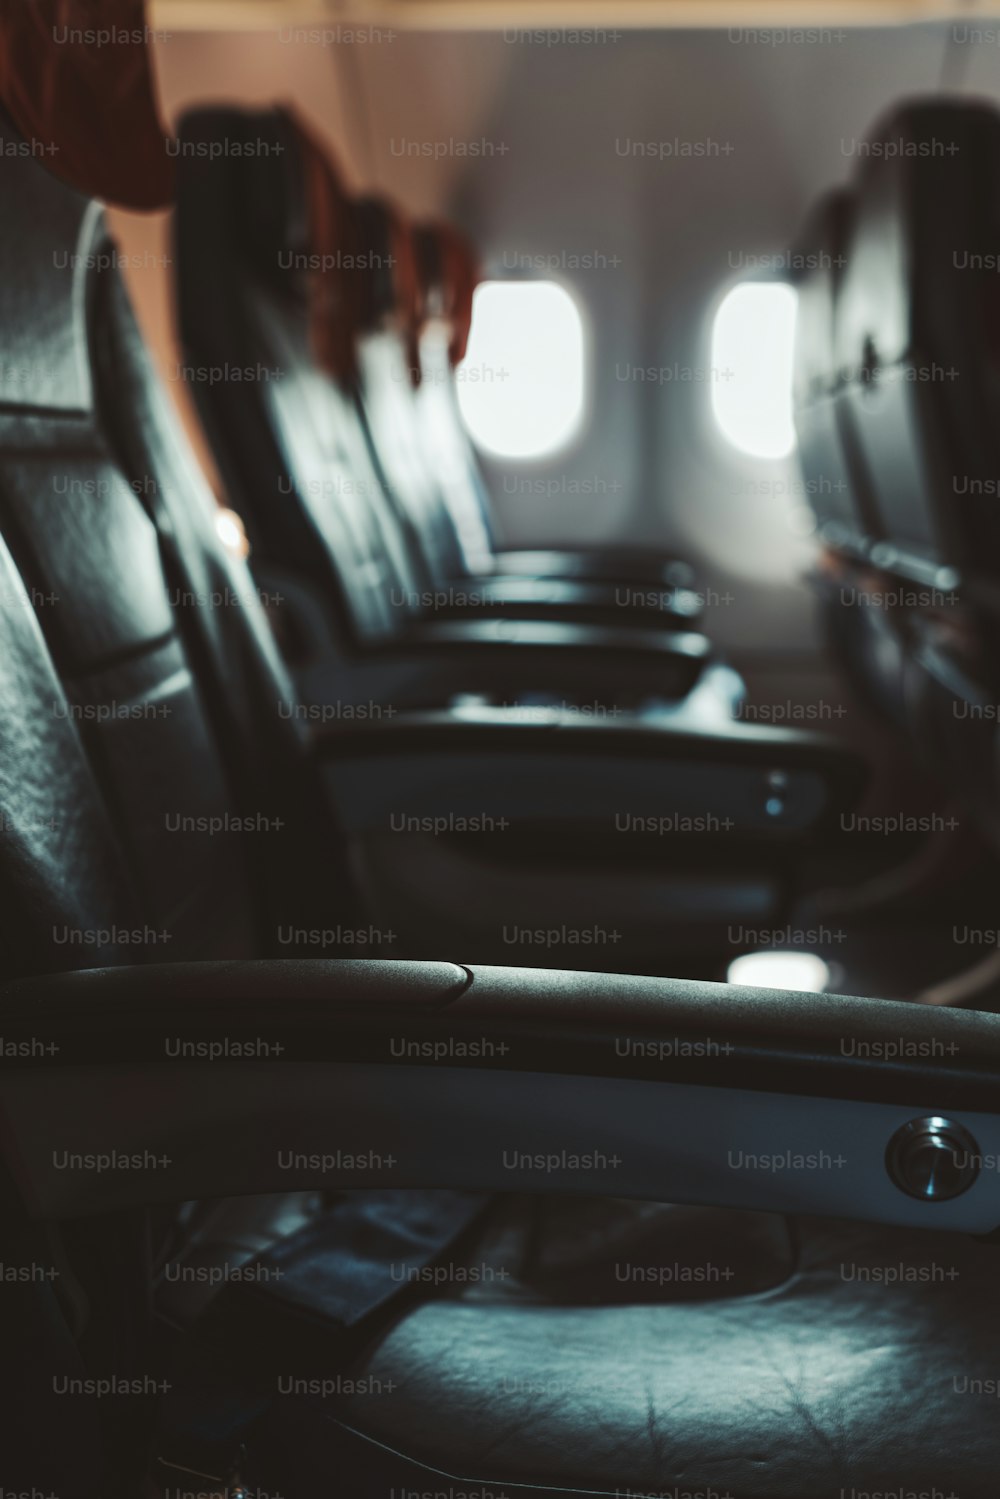 エコノミークラスの暗い航空機のインテリア:アームレストが下がったモダンな空の革張りの座席の列、浅い被写界深度、前景の肘当てへの選択的な焦点、頭の下のぼろきれマット